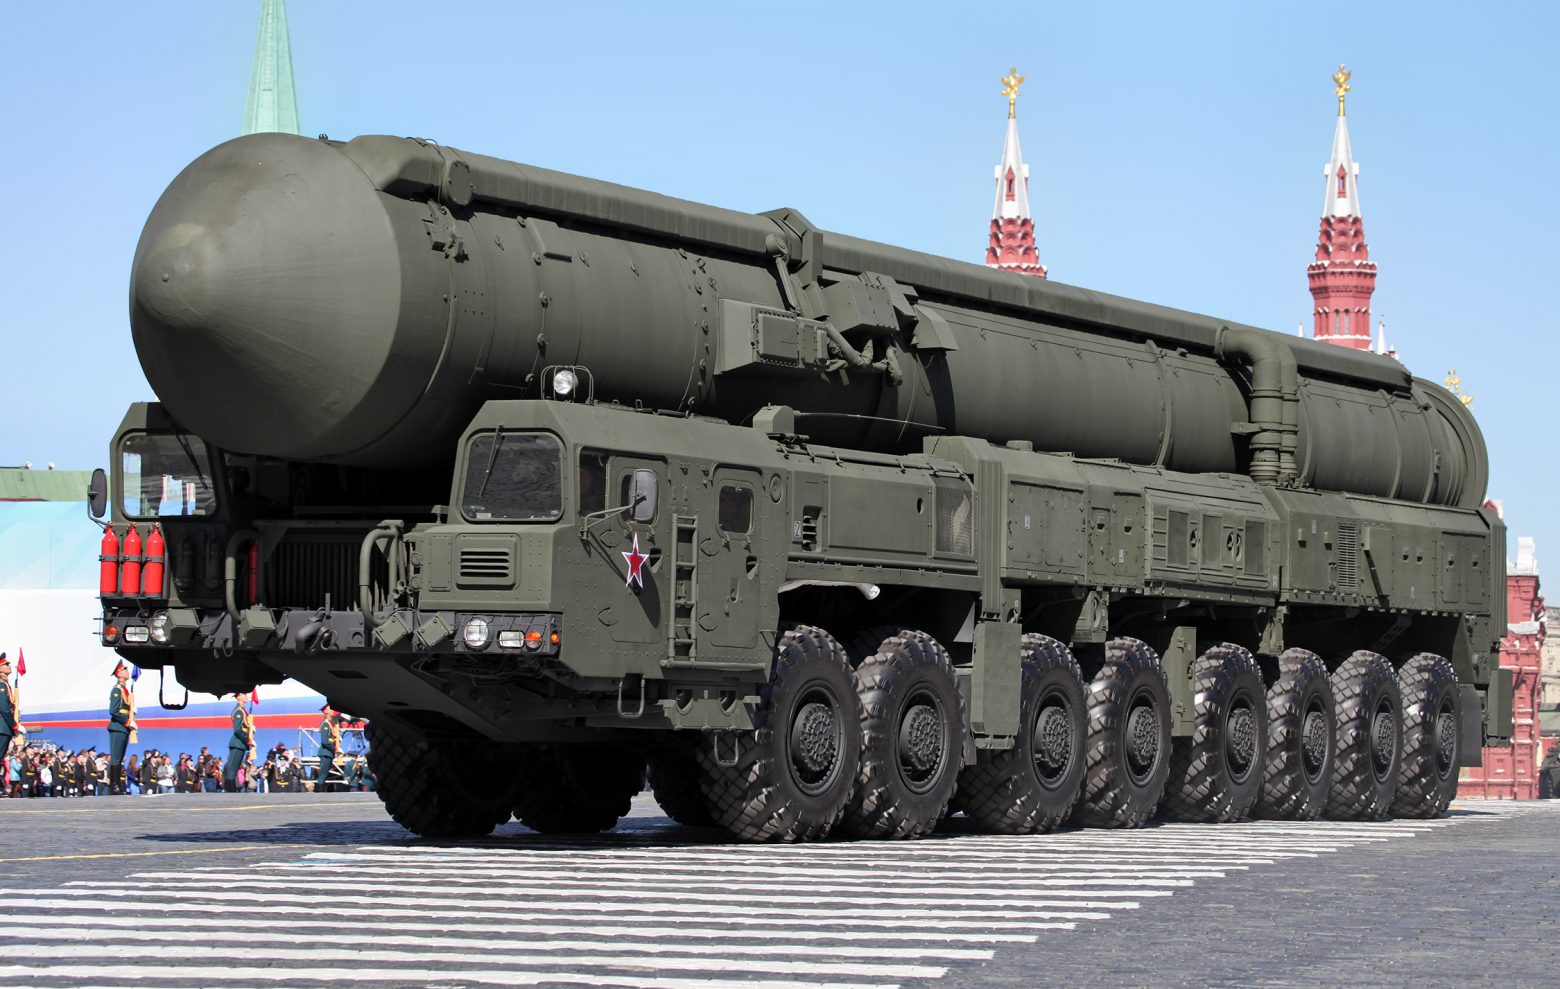 Πυρηνικά γυμνάσια η απάντηση Πούτιν στις δηλώσεις δυτικών για αποστολή στρατού στην Ουκρανία – Ορκίζεται αύριο για μια νέα θητεία